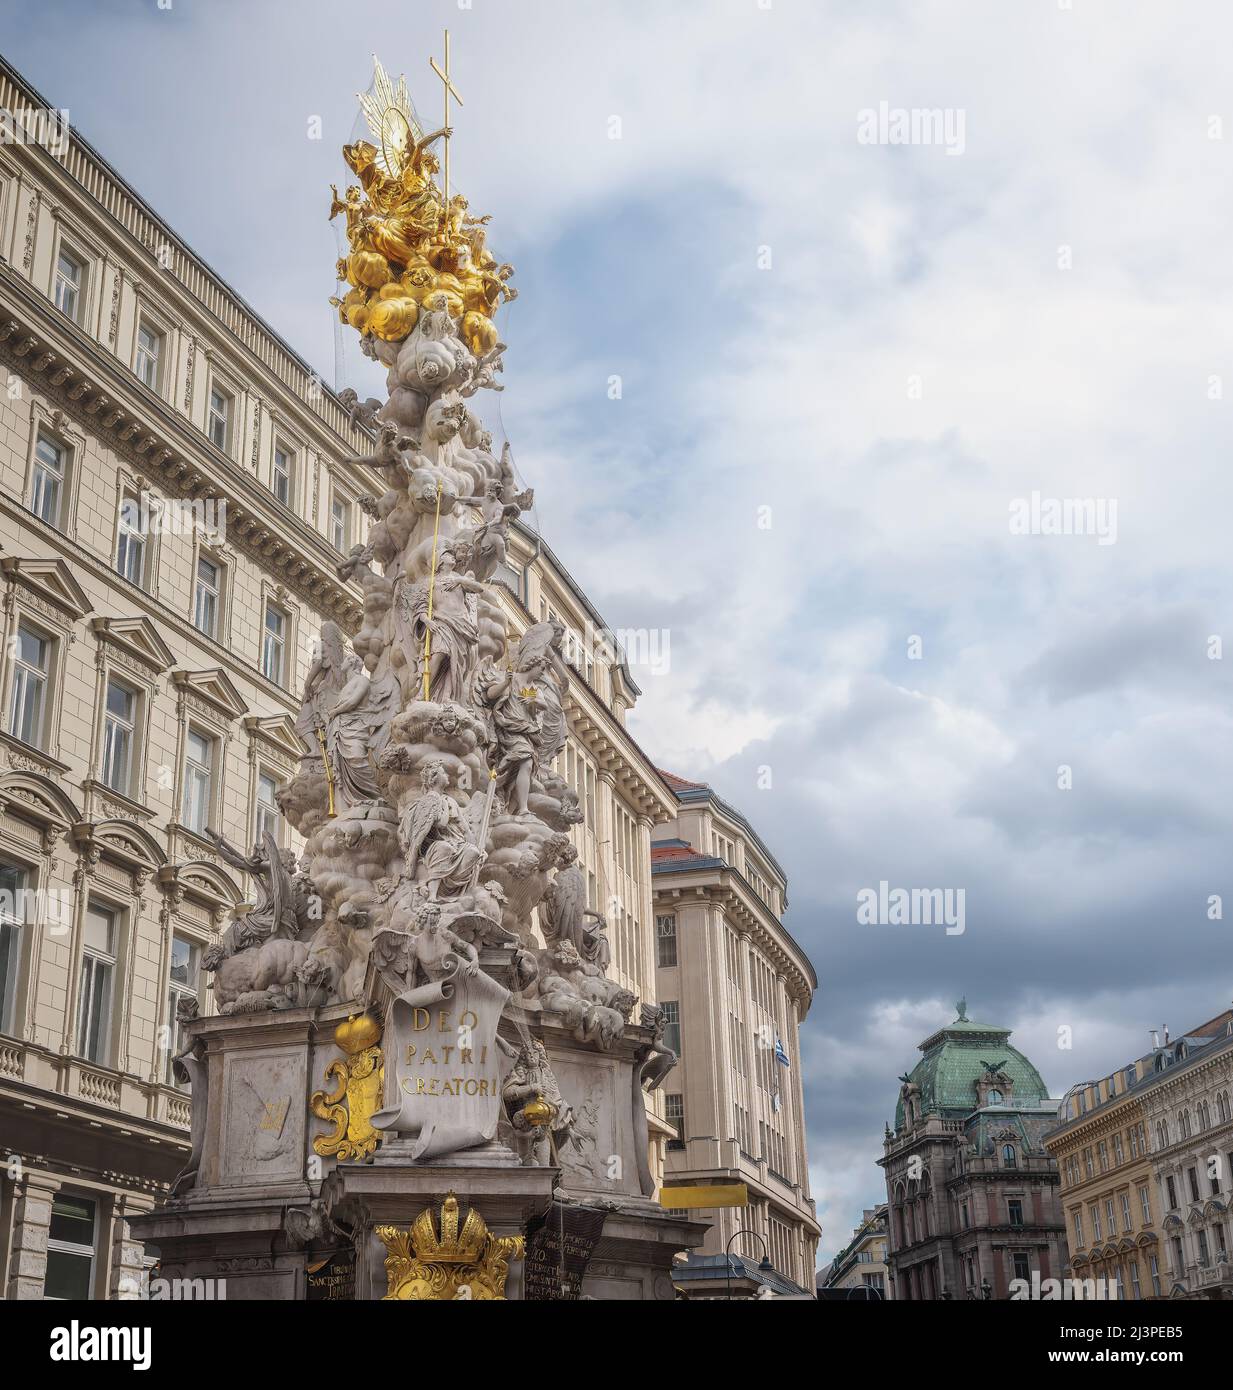 Colonne de la peste à Graben Street - monument inauguré en 1694 et conçu par divers artistes - Vienne, Autriche Banque D'Images